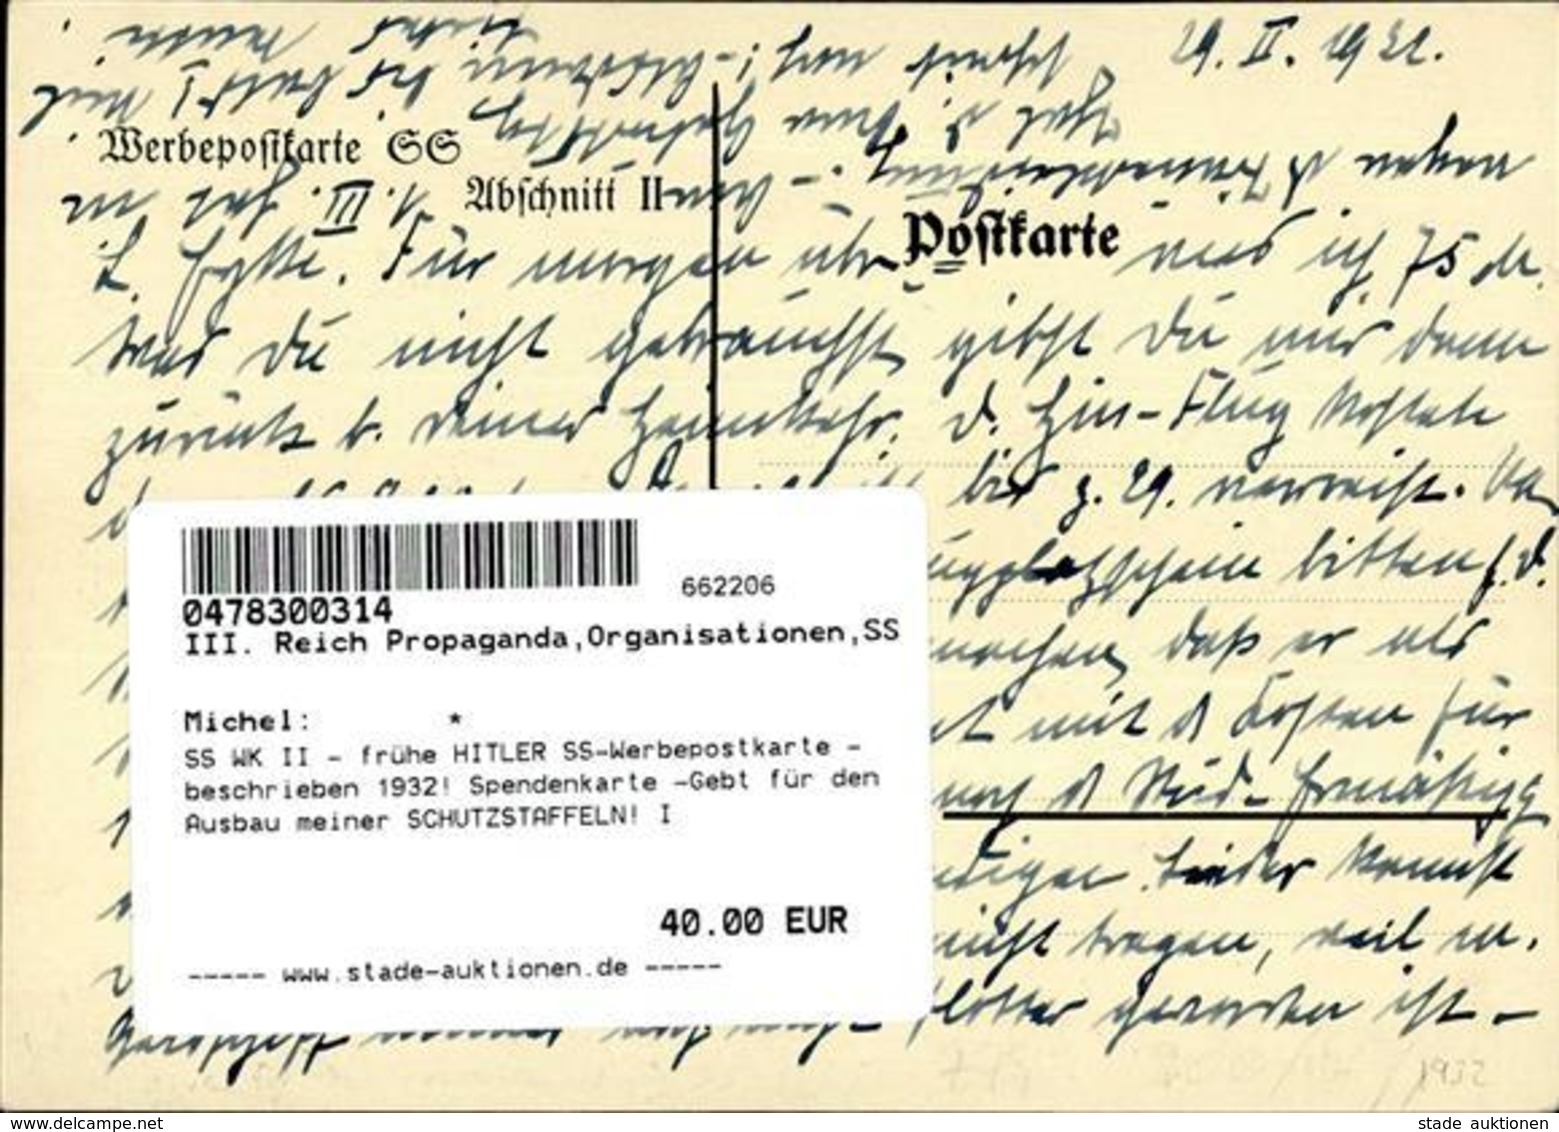 SS WK II - Frühe HITLER SS-Werbepostkarte - Beschrieben 1932! Spendenkarte -Gebt Für Den Ausbau Meiner SCHUTZSTAFFELN! I - Weltkrieg 1939-45